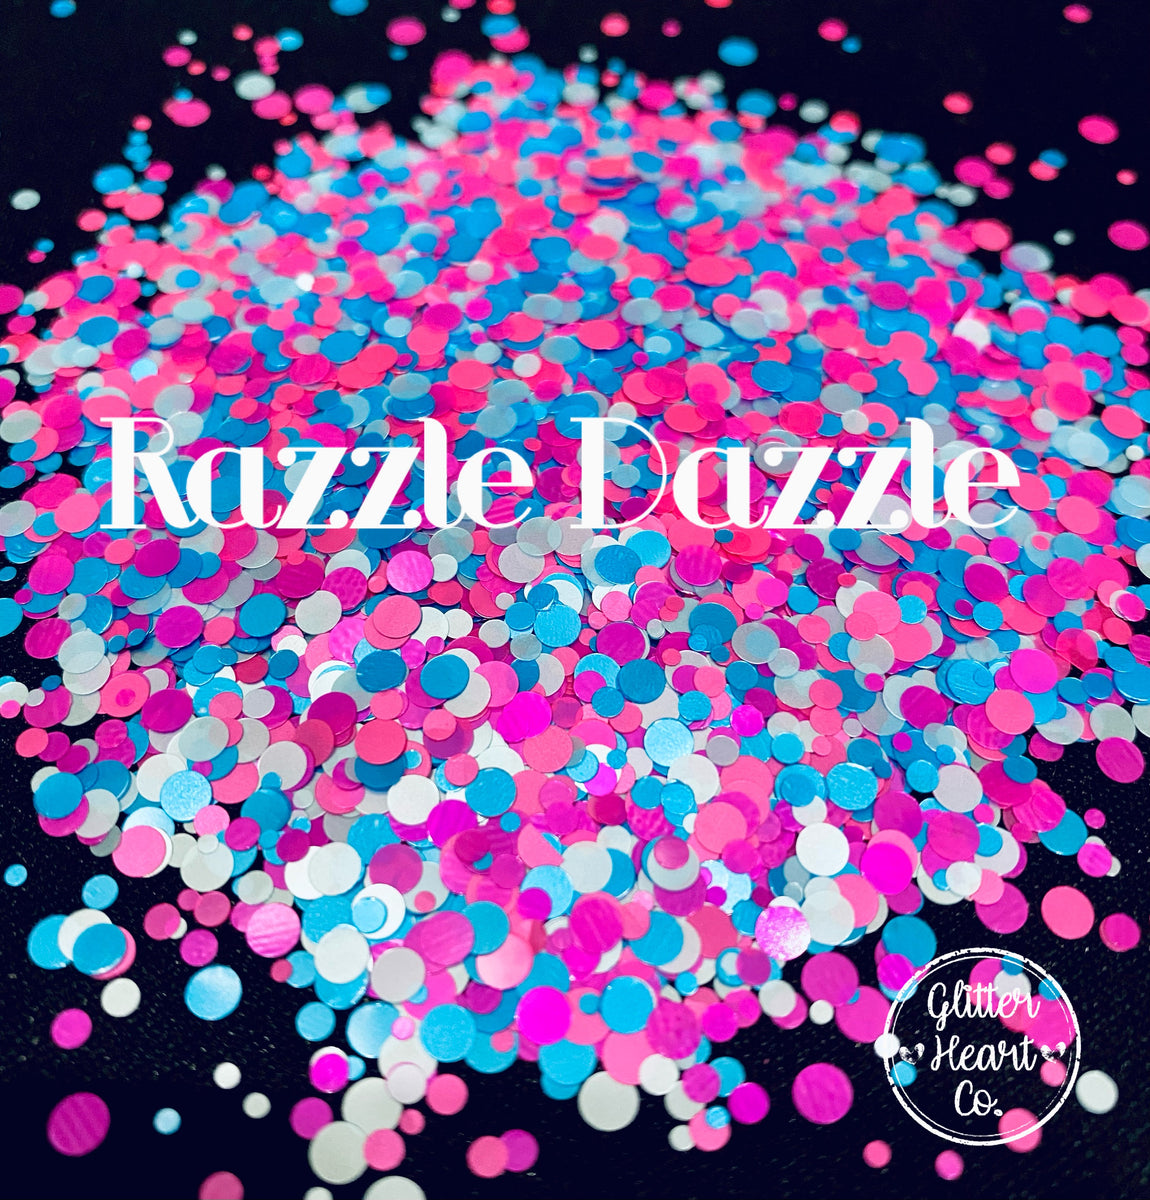 Razzle Dazzle Girl Boss Glitter, Extra Fine Multi-Purpose Glitter